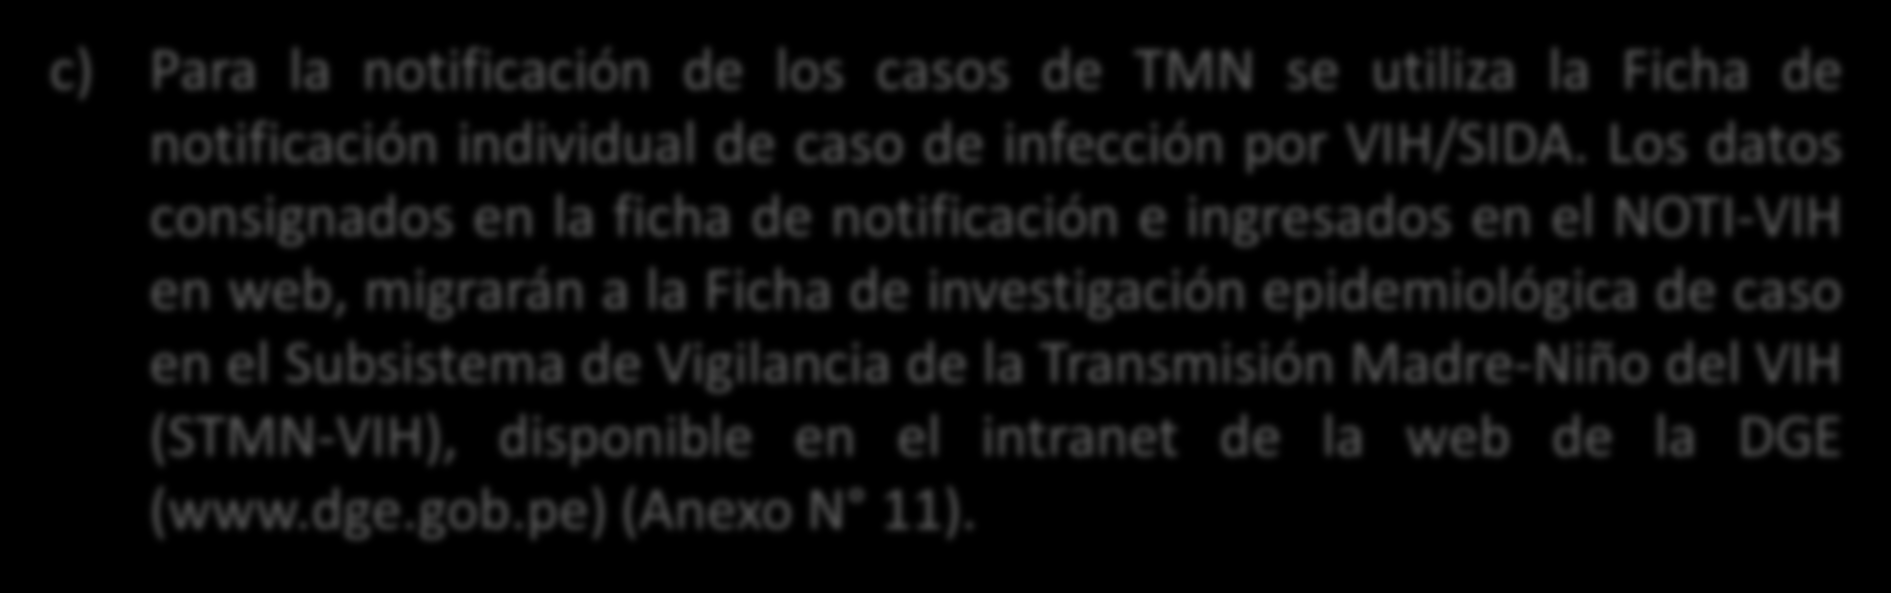 c) Para la notificación de los casos de TMN se utiliza la Ficha de notificación individual de caso de infección por VIH/SIDA.